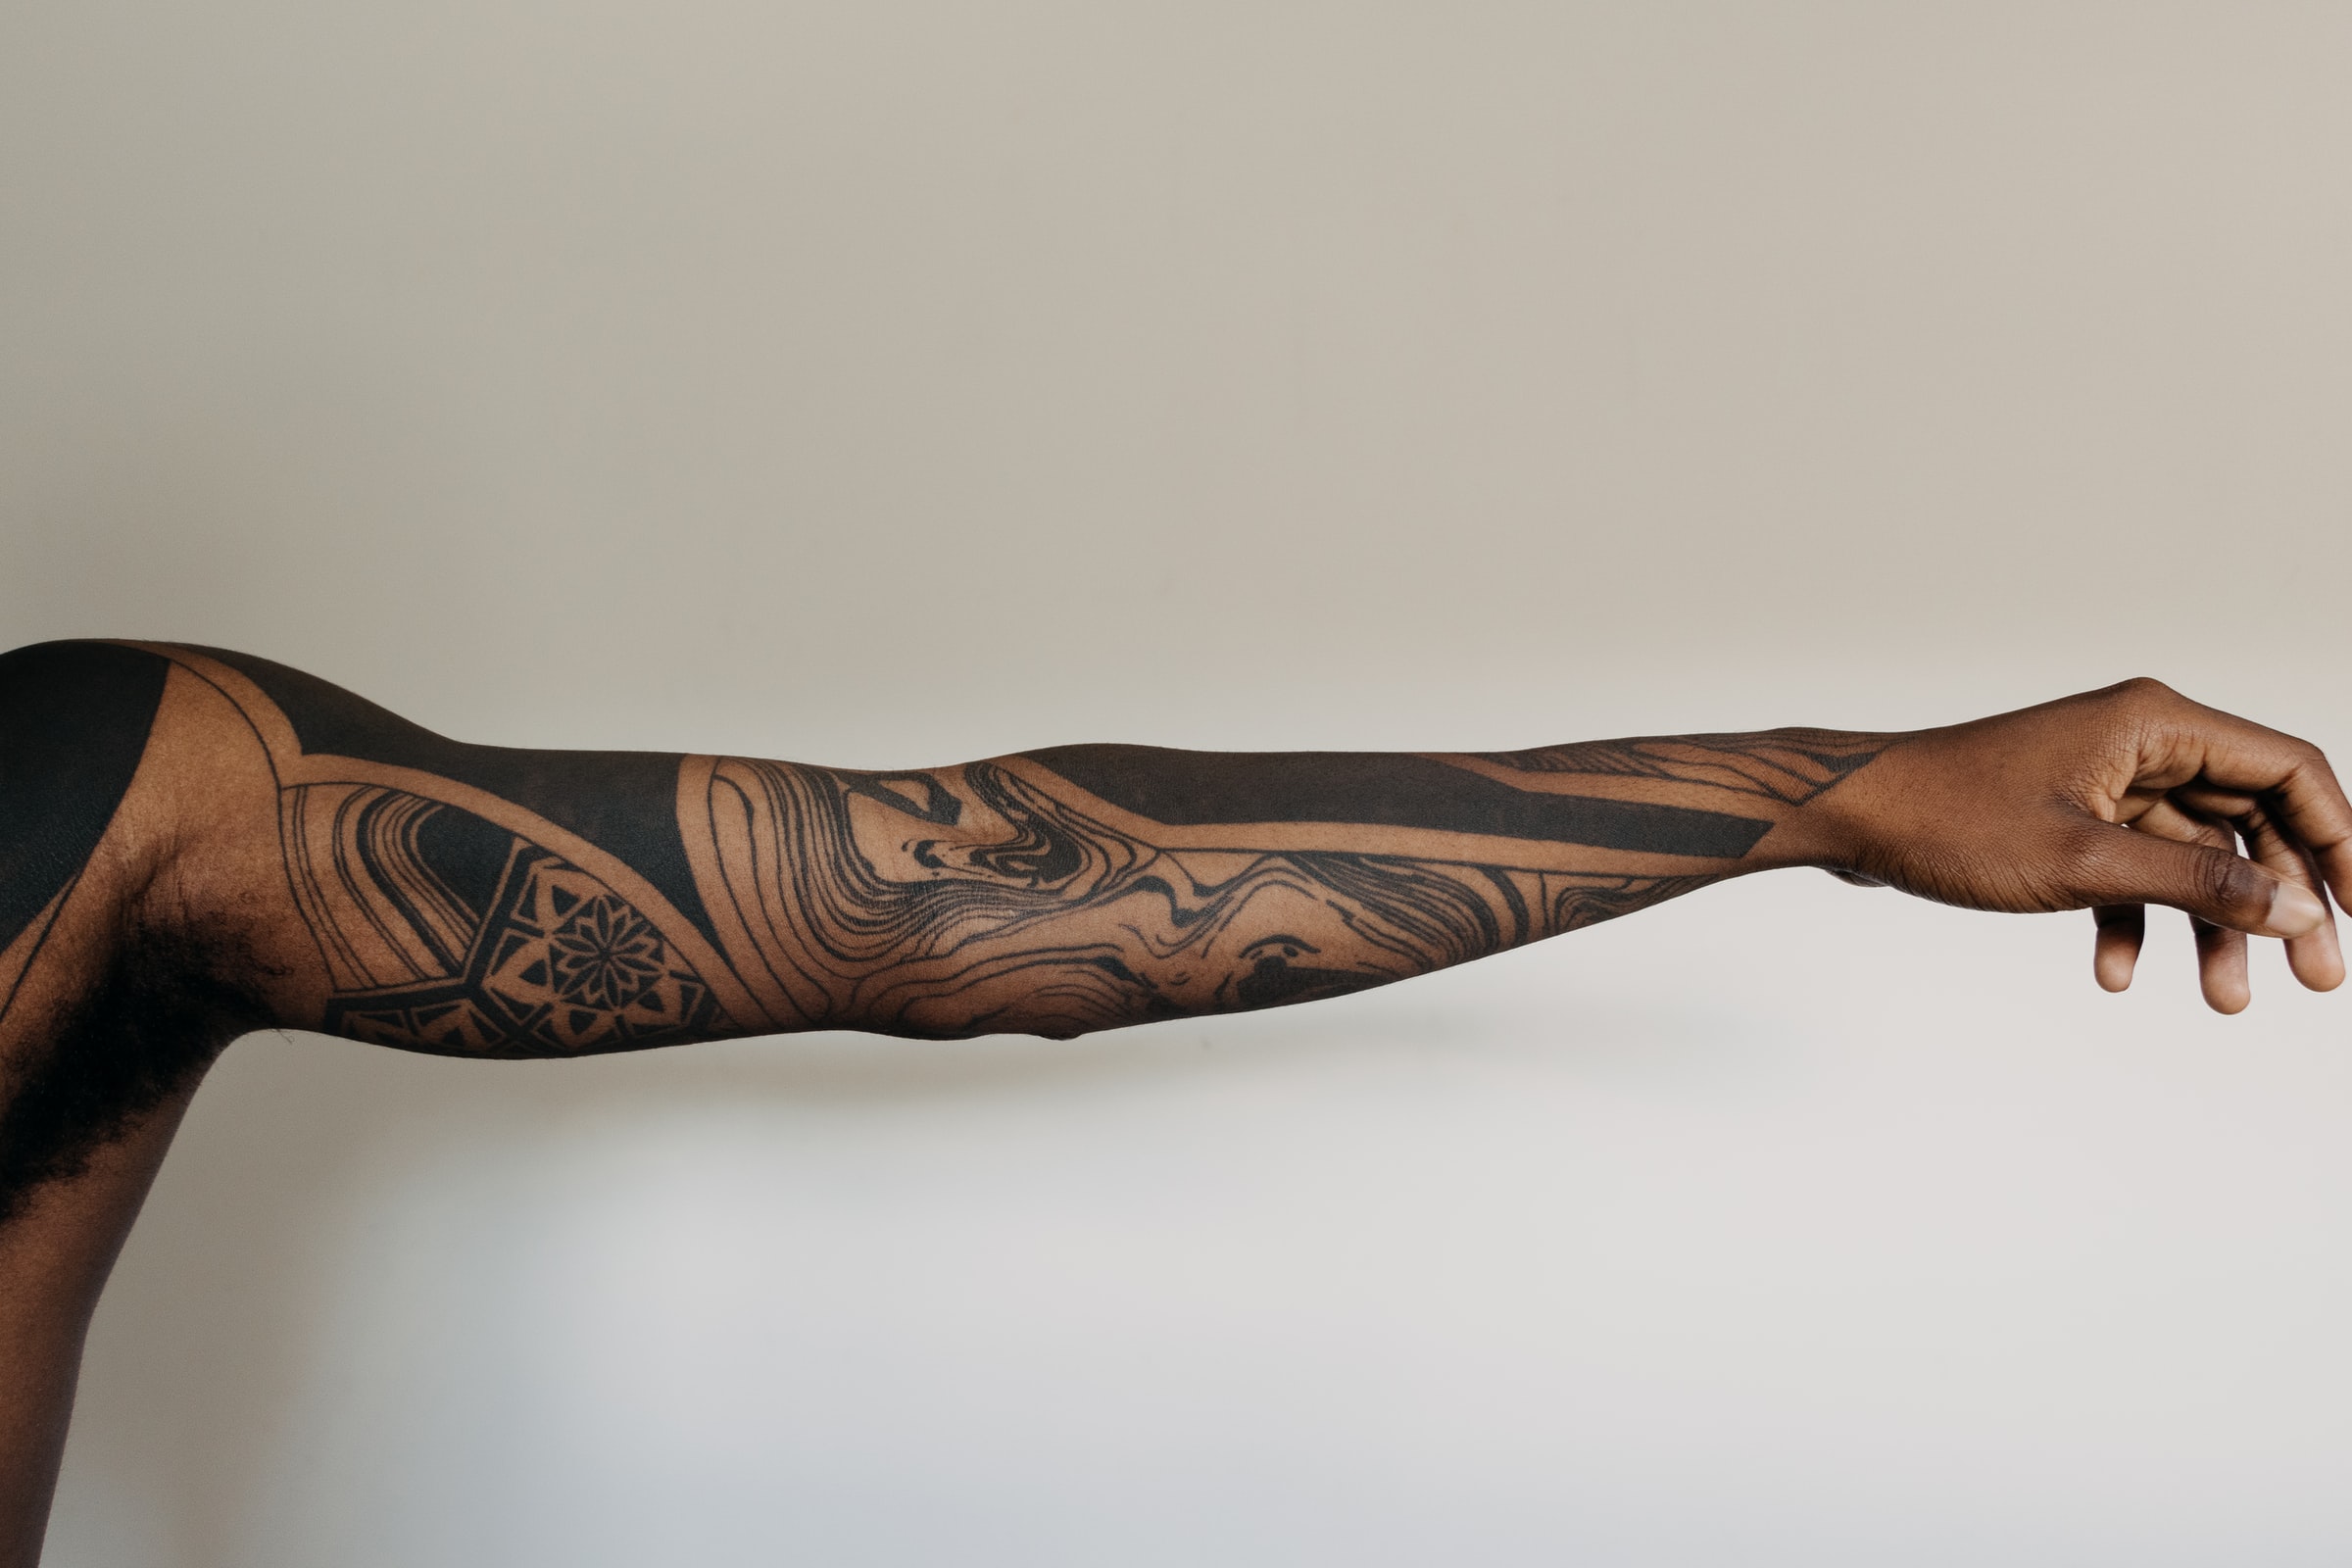 How to darken tattoo ink